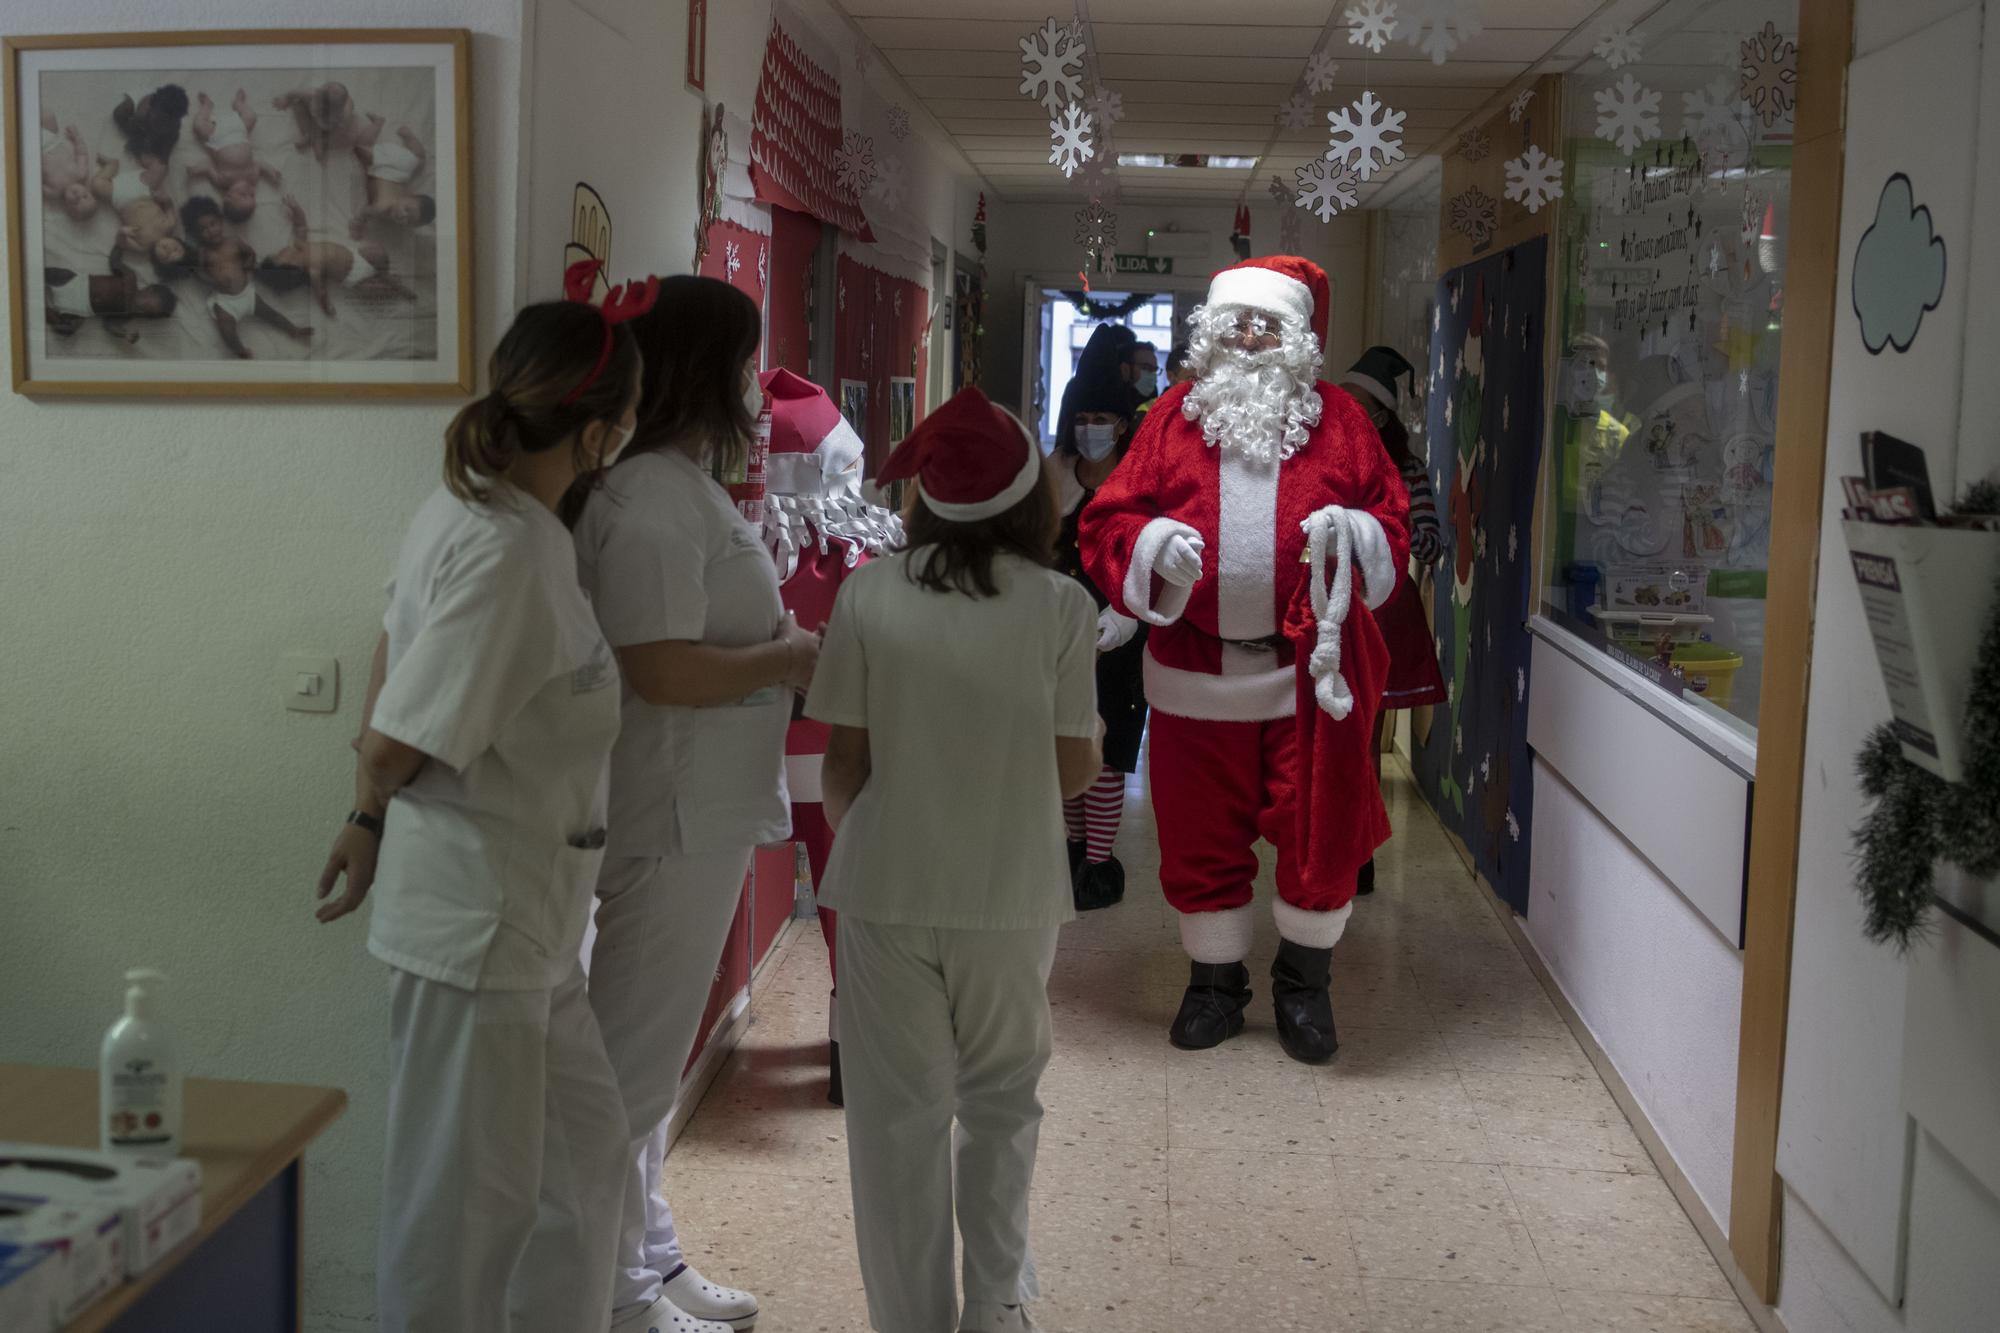 Unas sanitarias observan la llegada de Papá Noel.